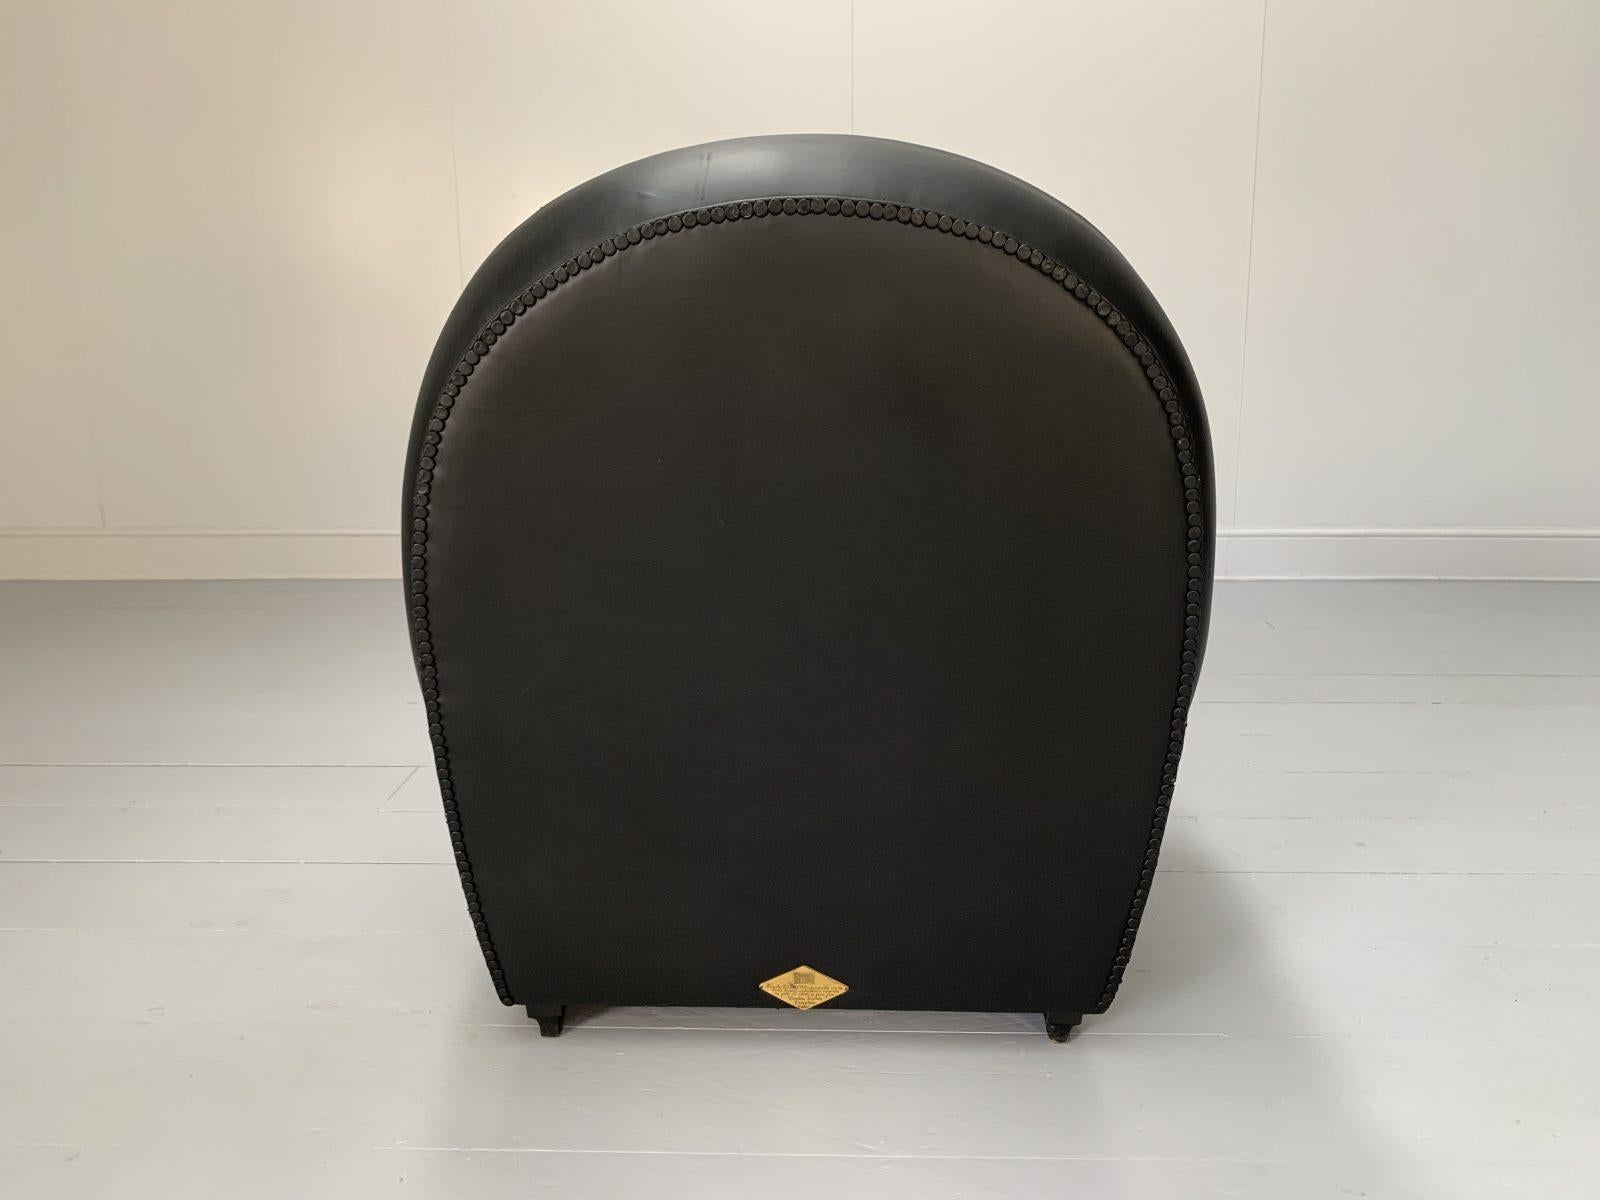 Pair of Poltrona Frau “Vanity Fair” Armchairs – In “Pelle Frau” Black Leather For Sale 5